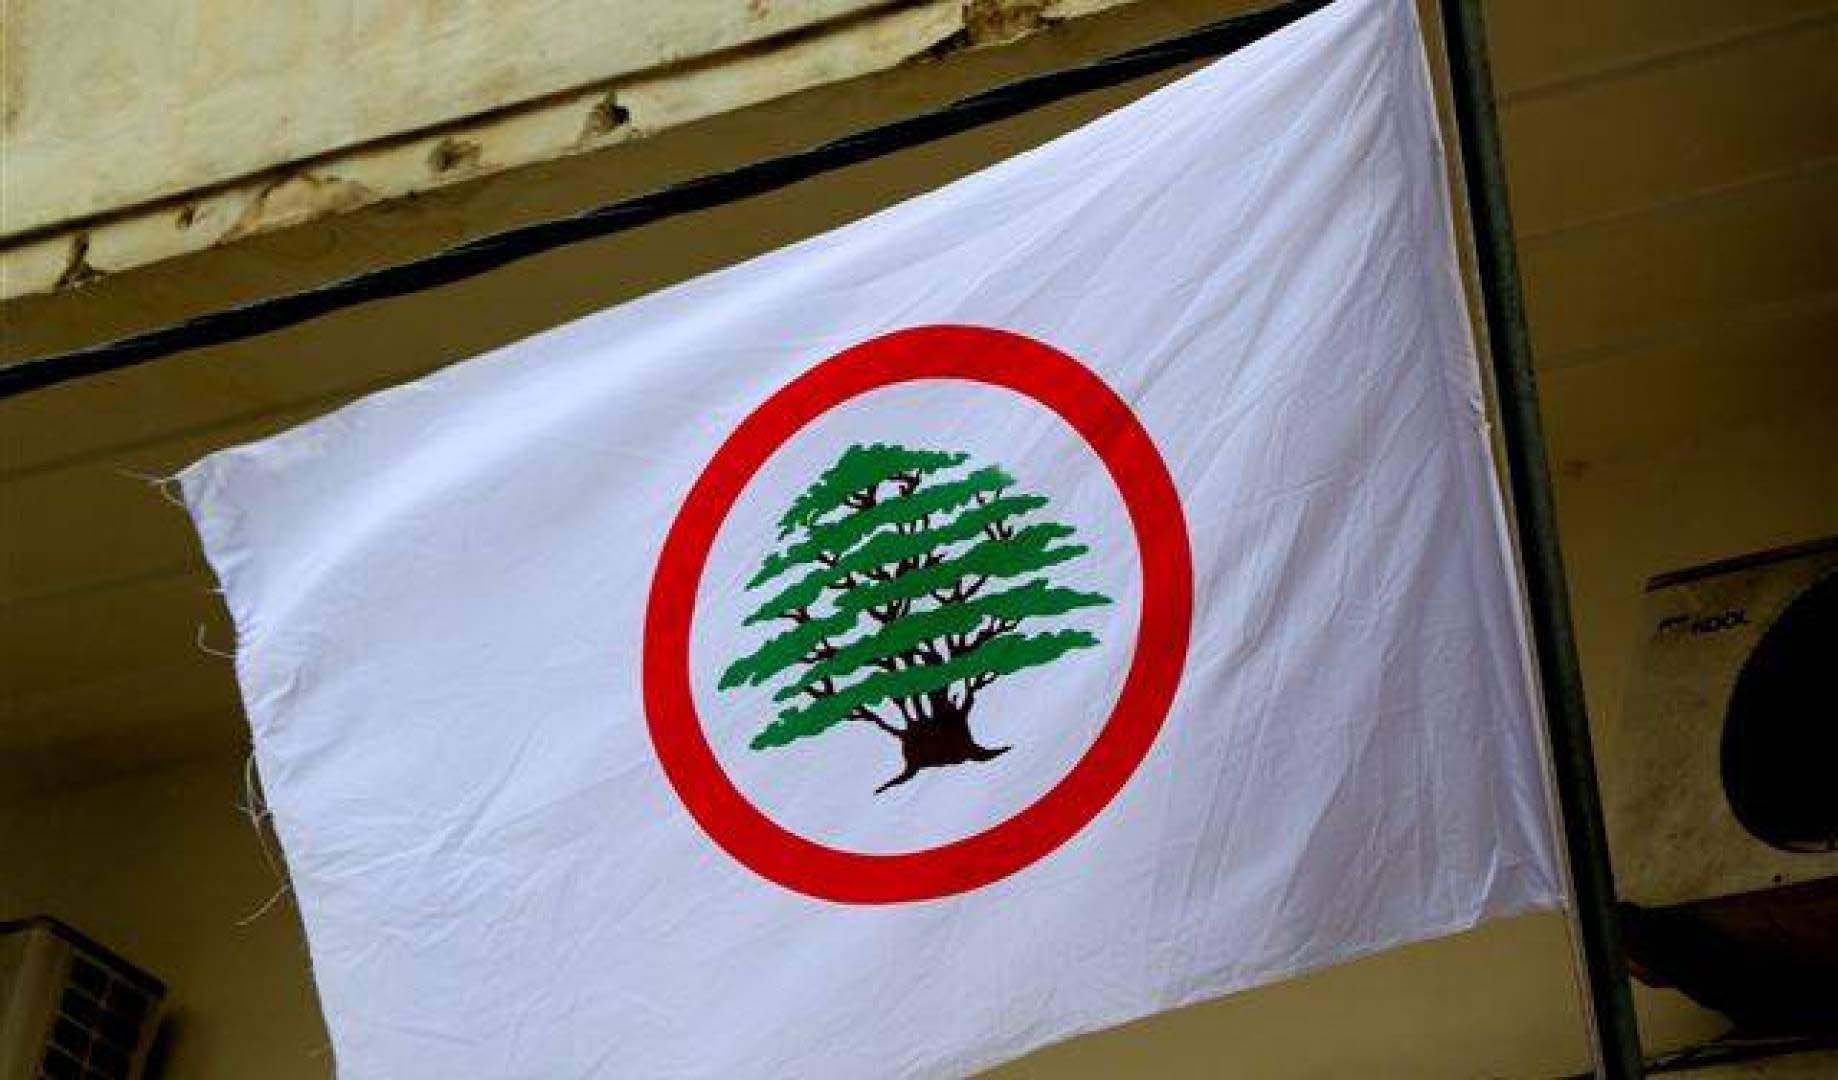 القوات اللبنانية رداً على مقال في صحيفة الأخبار: جريمة قتل الحصروني مُنظمة من قبل جهة معينة 